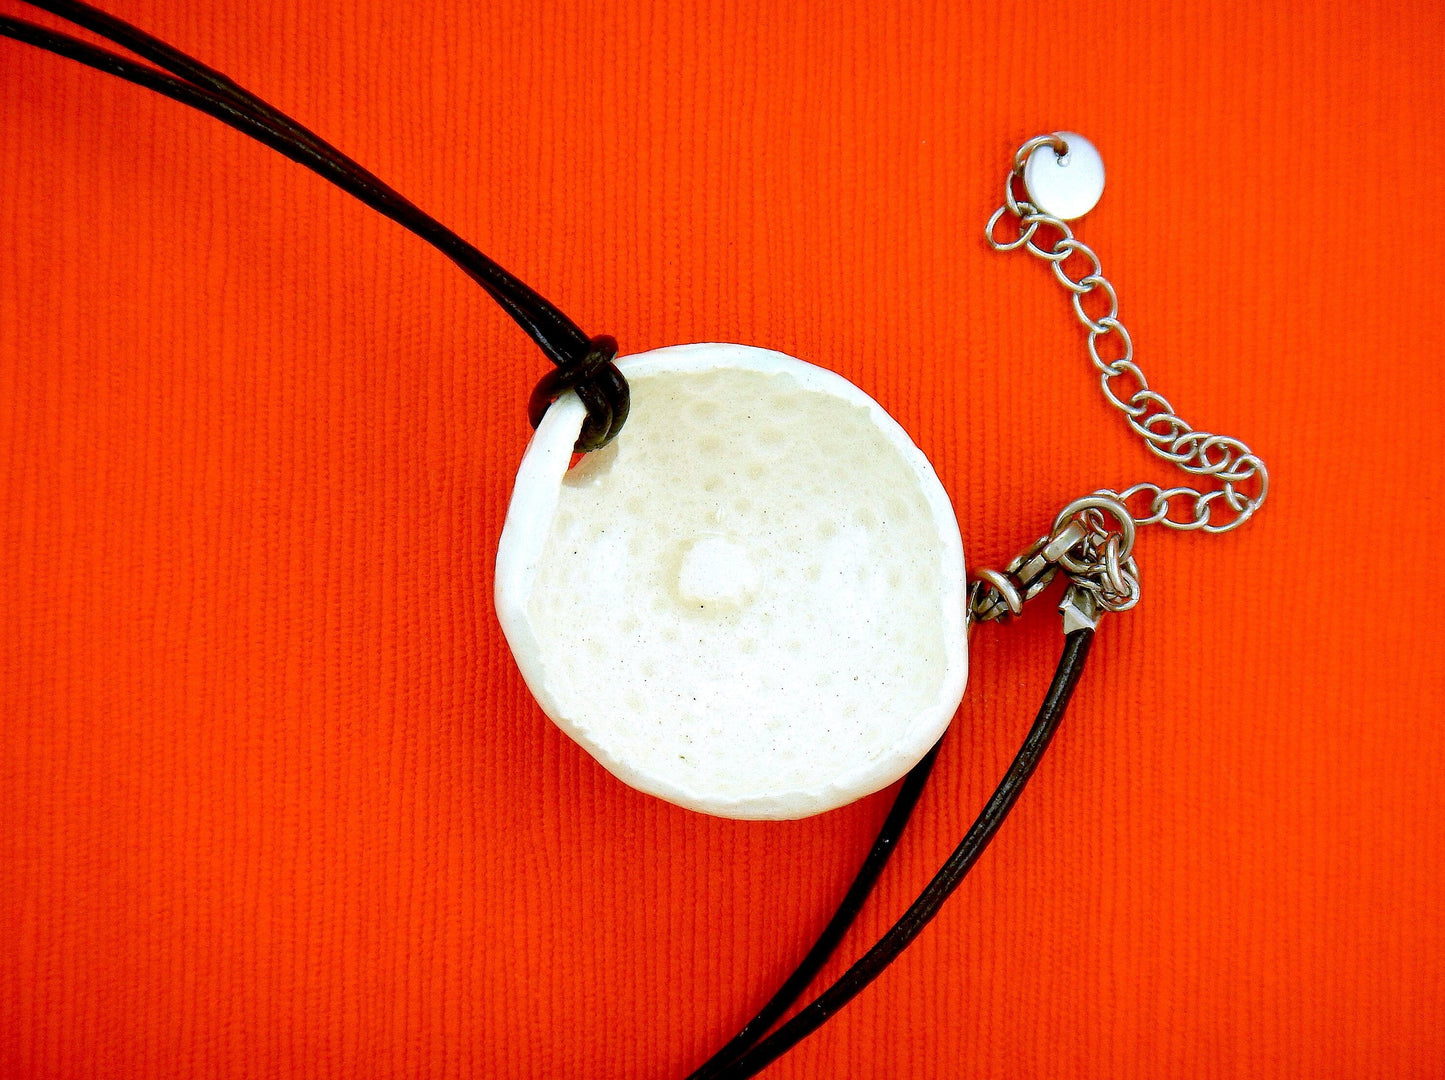 Collier 24 po avec pendentif demi-oursin de faïence blanc crème fait à la main à Montréal, cordon de cuir noir, fermoir acier inoxydable